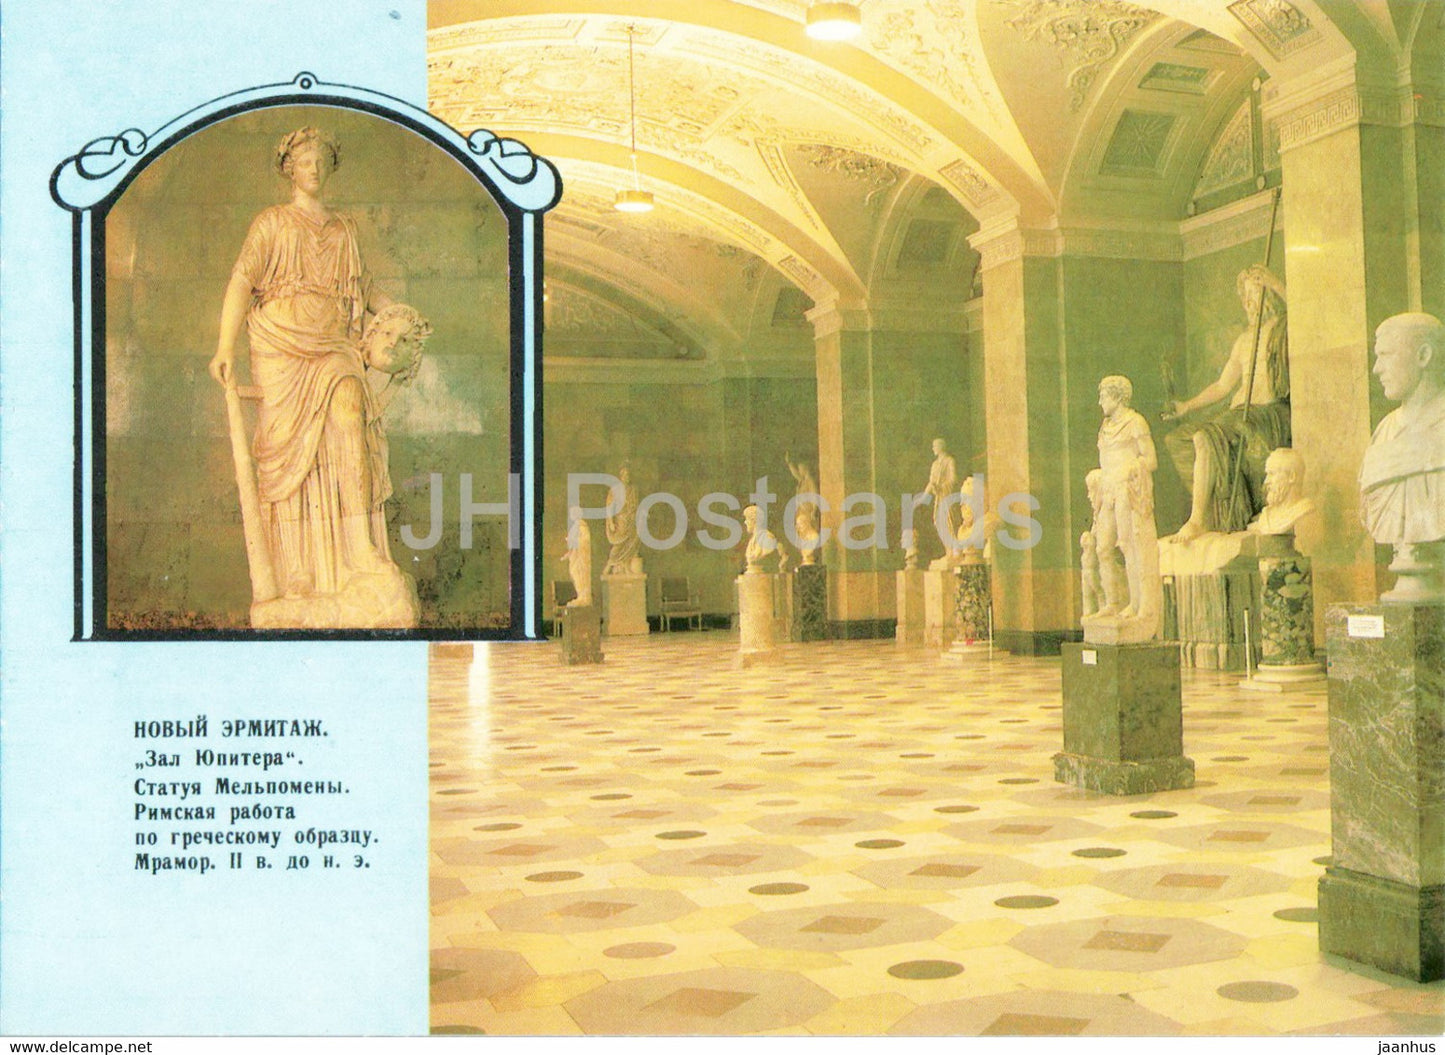 Leningrad - St Petersburg - State Hermitage - Jupiter Hall - postal stationery - 1989 - Russia USSR - unused - JH Postcards